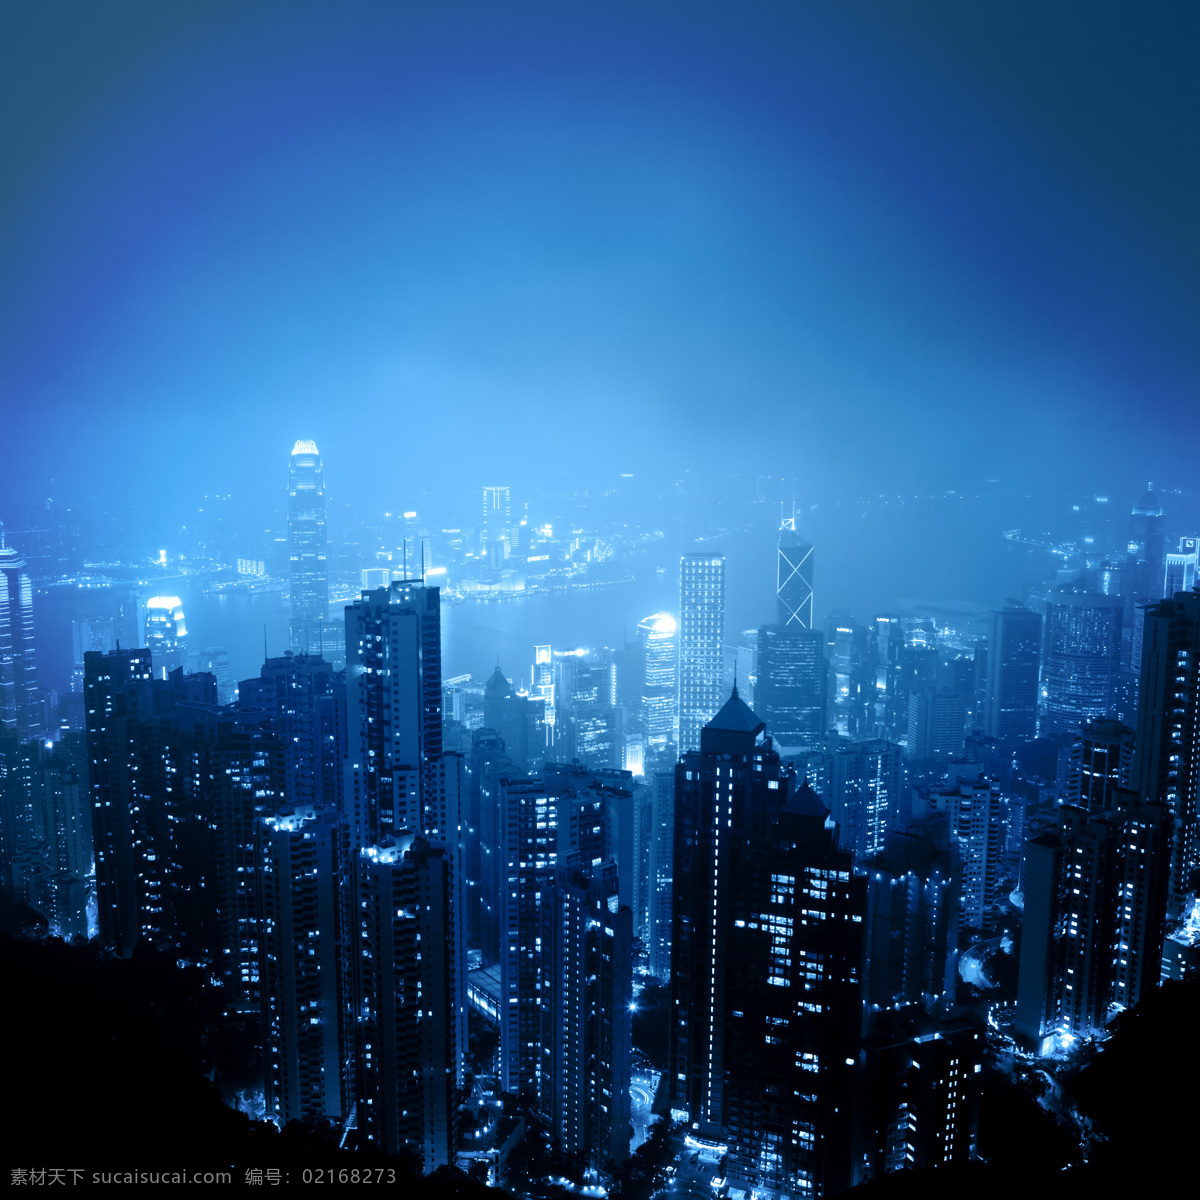 美丽 香港城 市 夜景 鸟瞰 城市风景 香港夜景 美丽城市 繁华都市 城市夜景 高楼大厦 美丽风景摄影 城市风光 环境家居 黑色